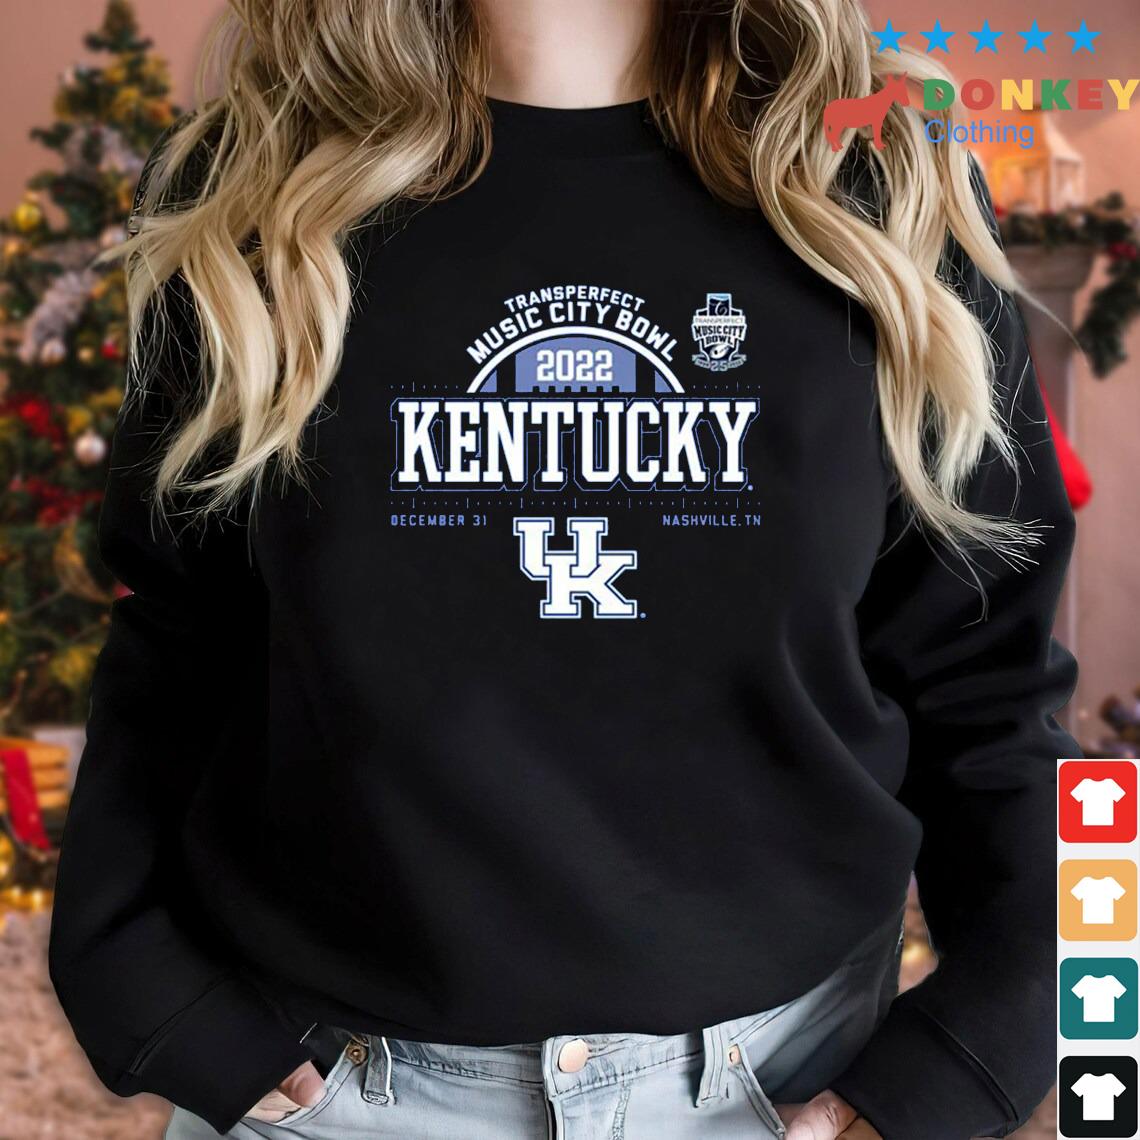 Kentucky Wildcats Transperfect Music City Bowl 2022 Dec 31 Nashville Shirt